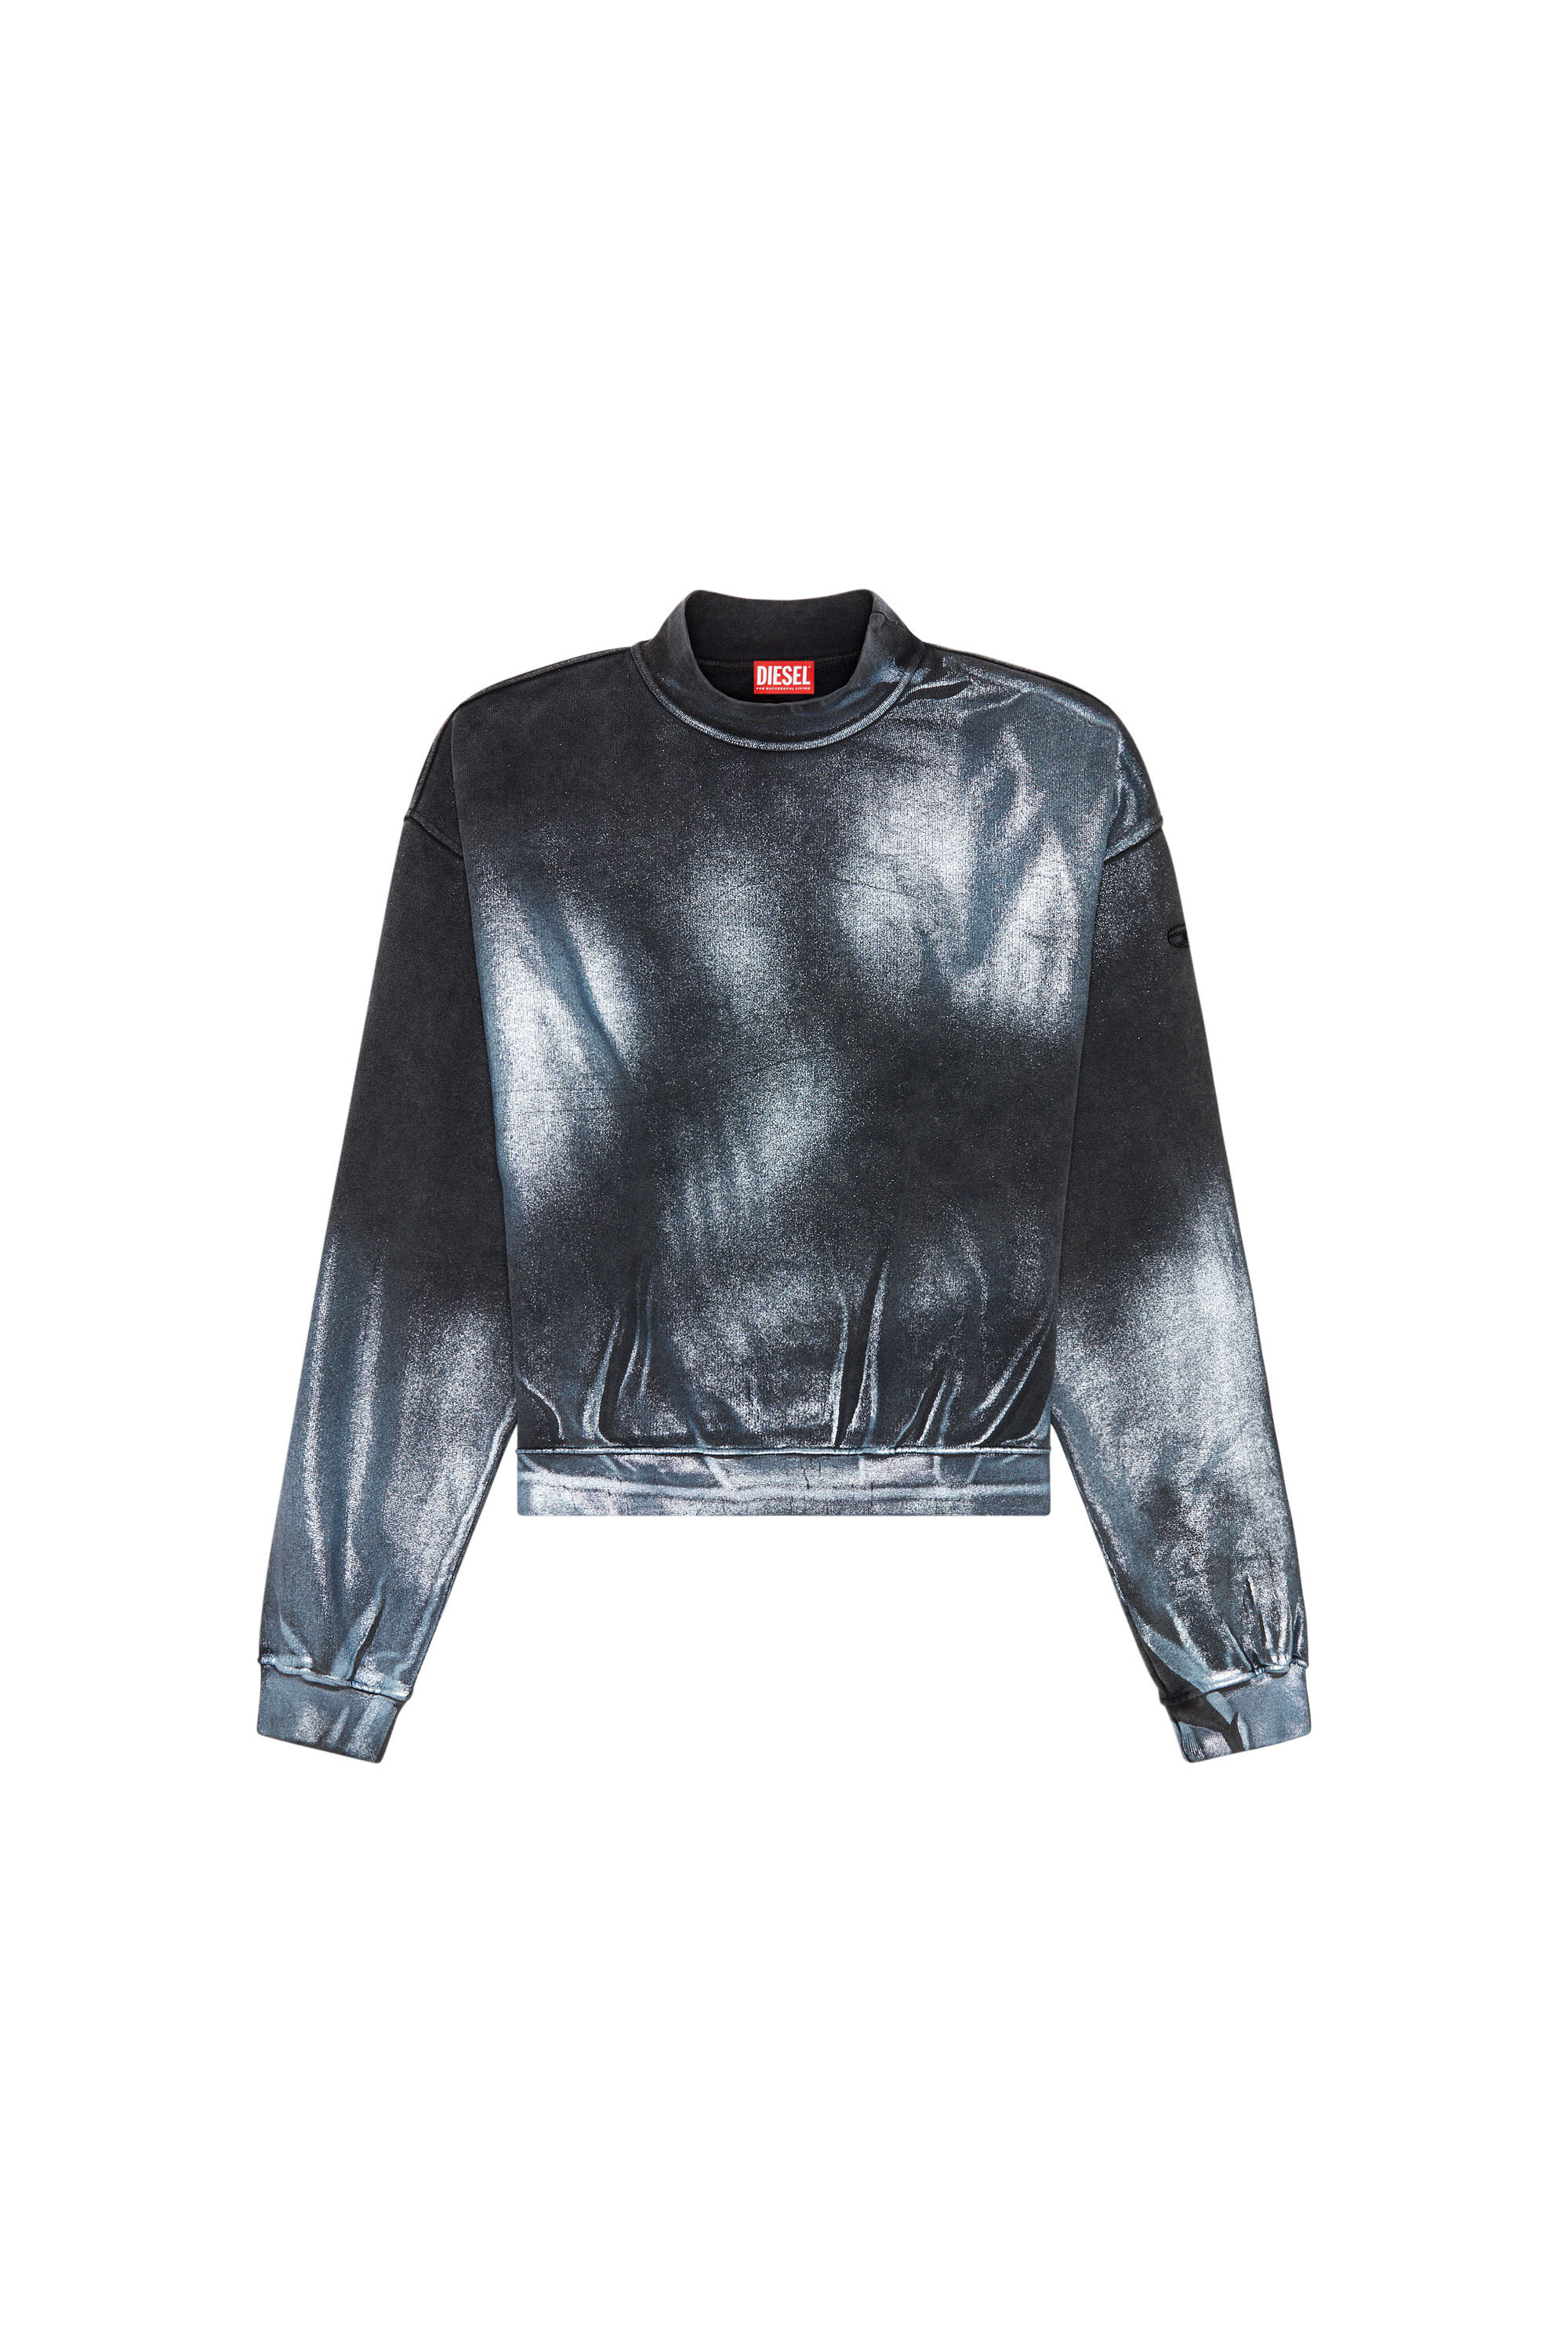 Diesel - F-ALEXAN, Homme Sweat-shirt métallisé délavé in Polychrome - Image 2